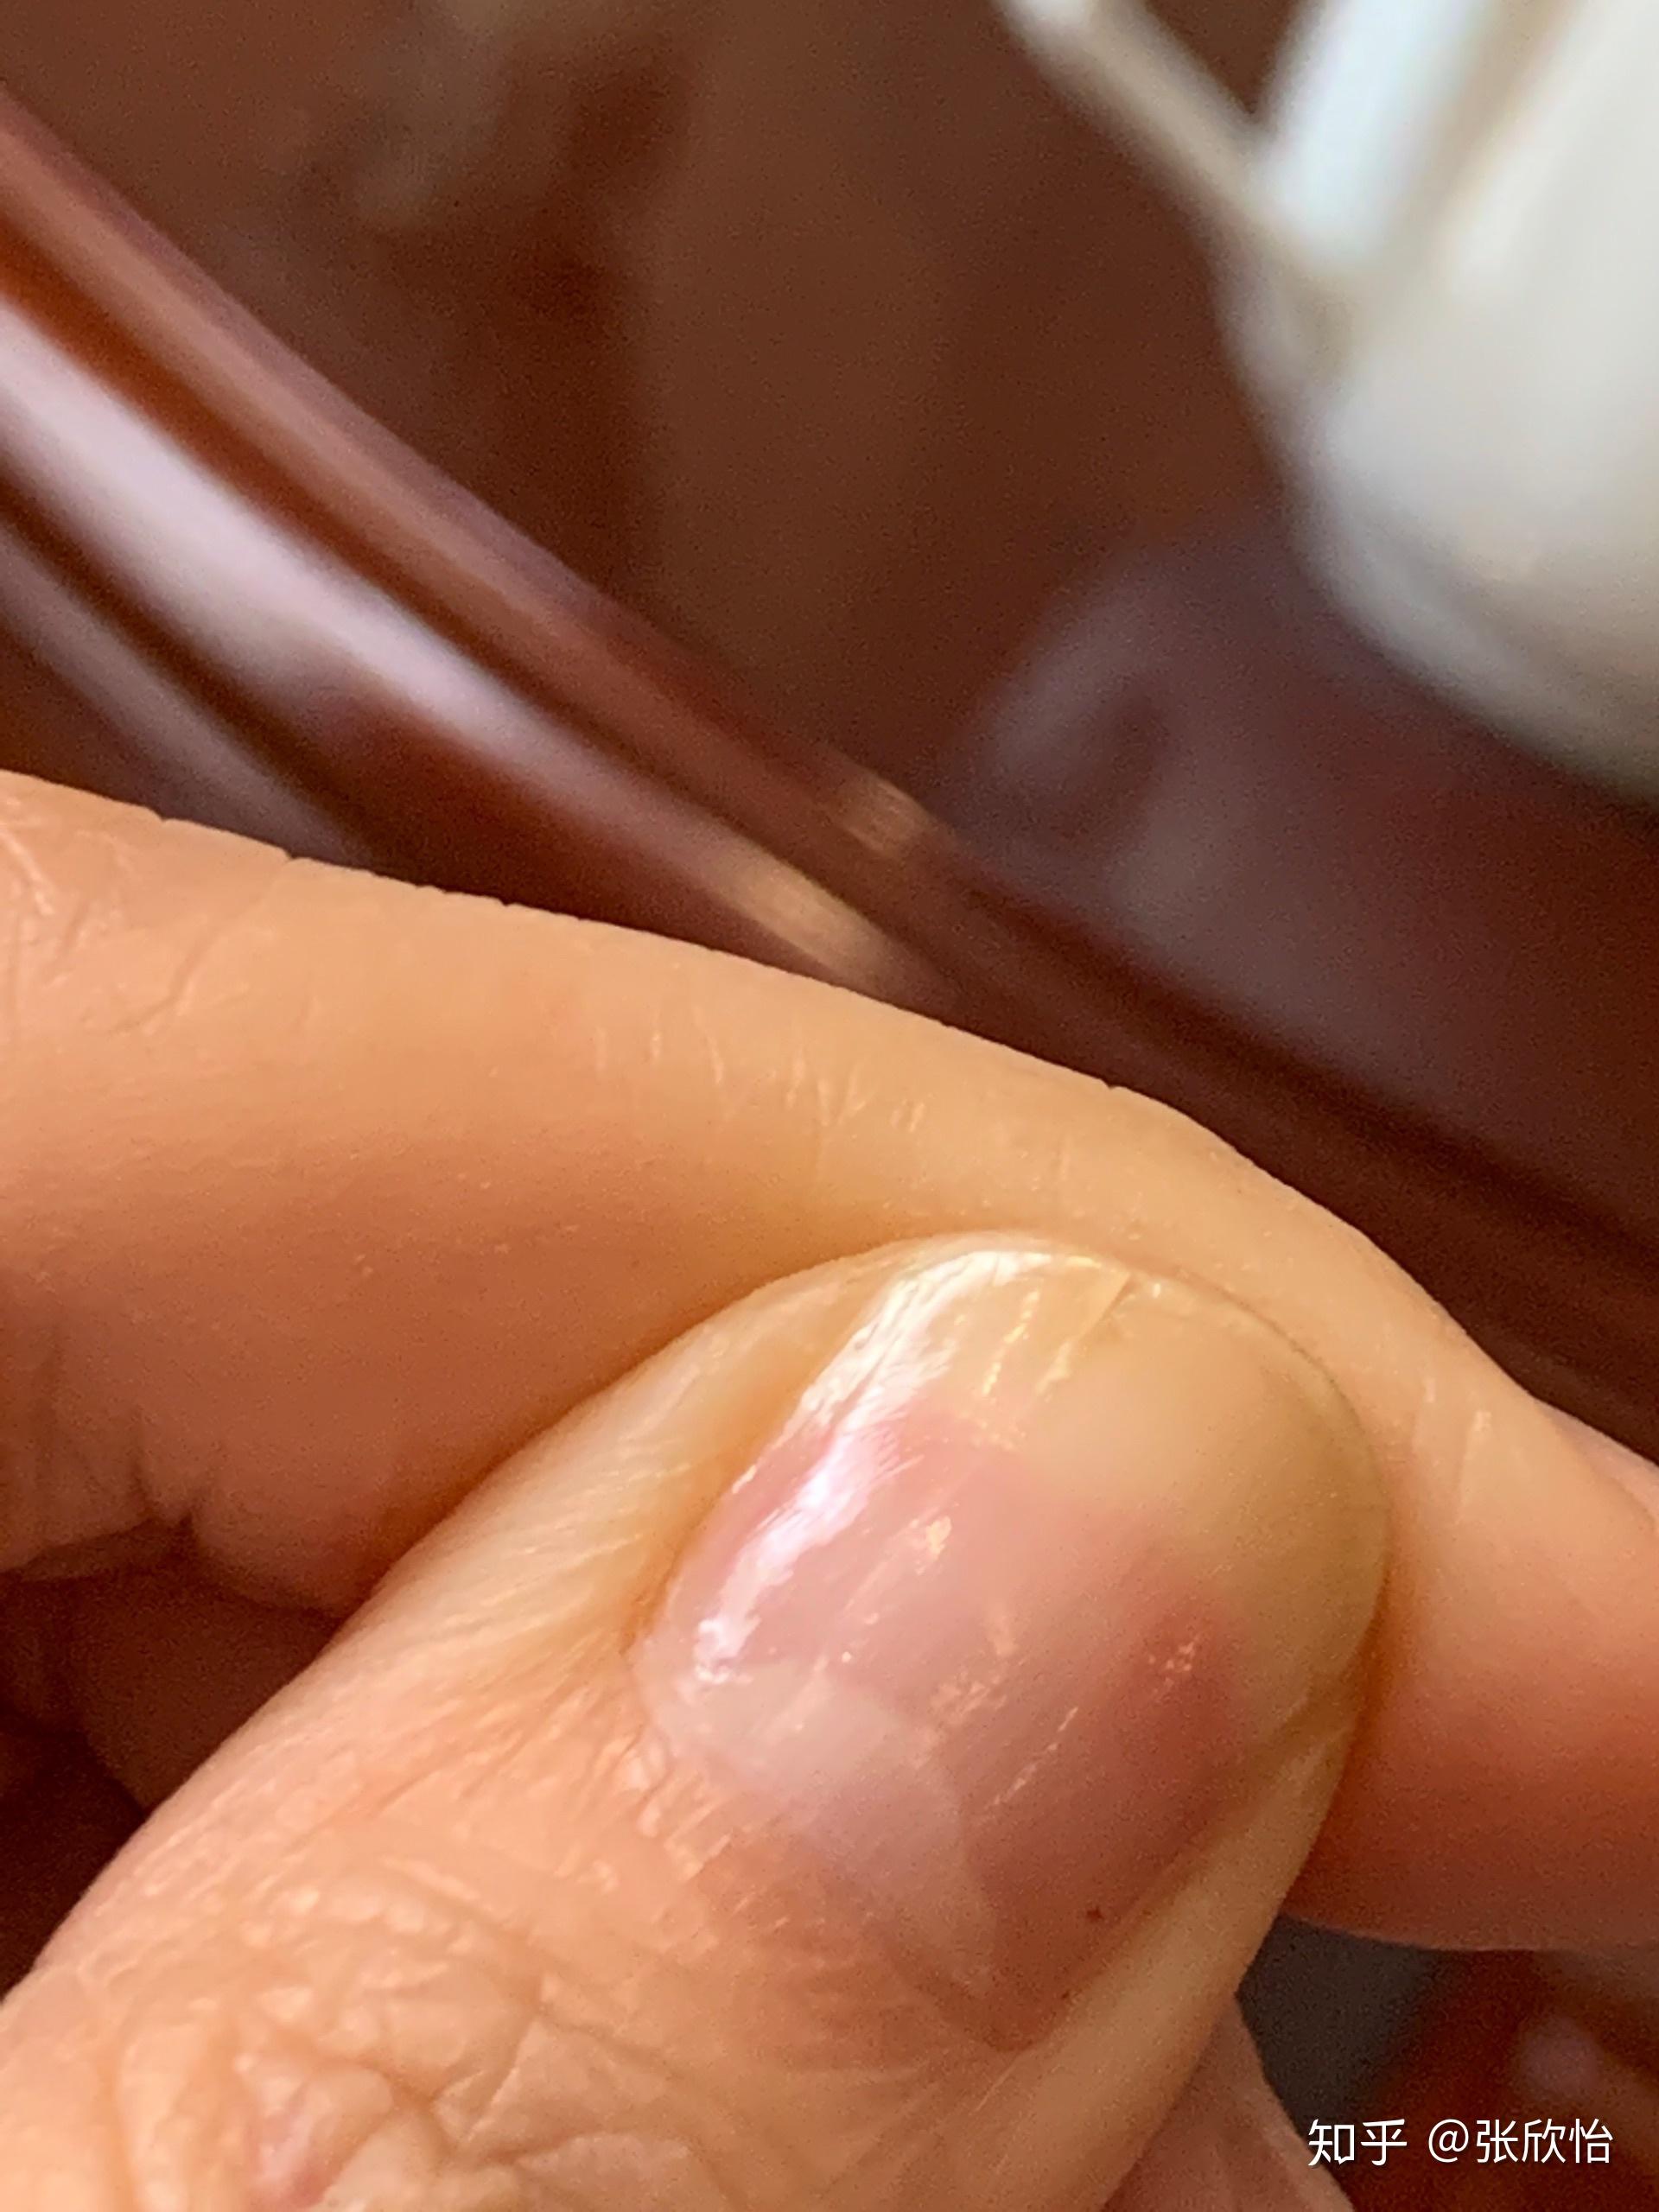 大拇指指甲有白色竖纹5年了,今年从竖纹出经常裂开,求助